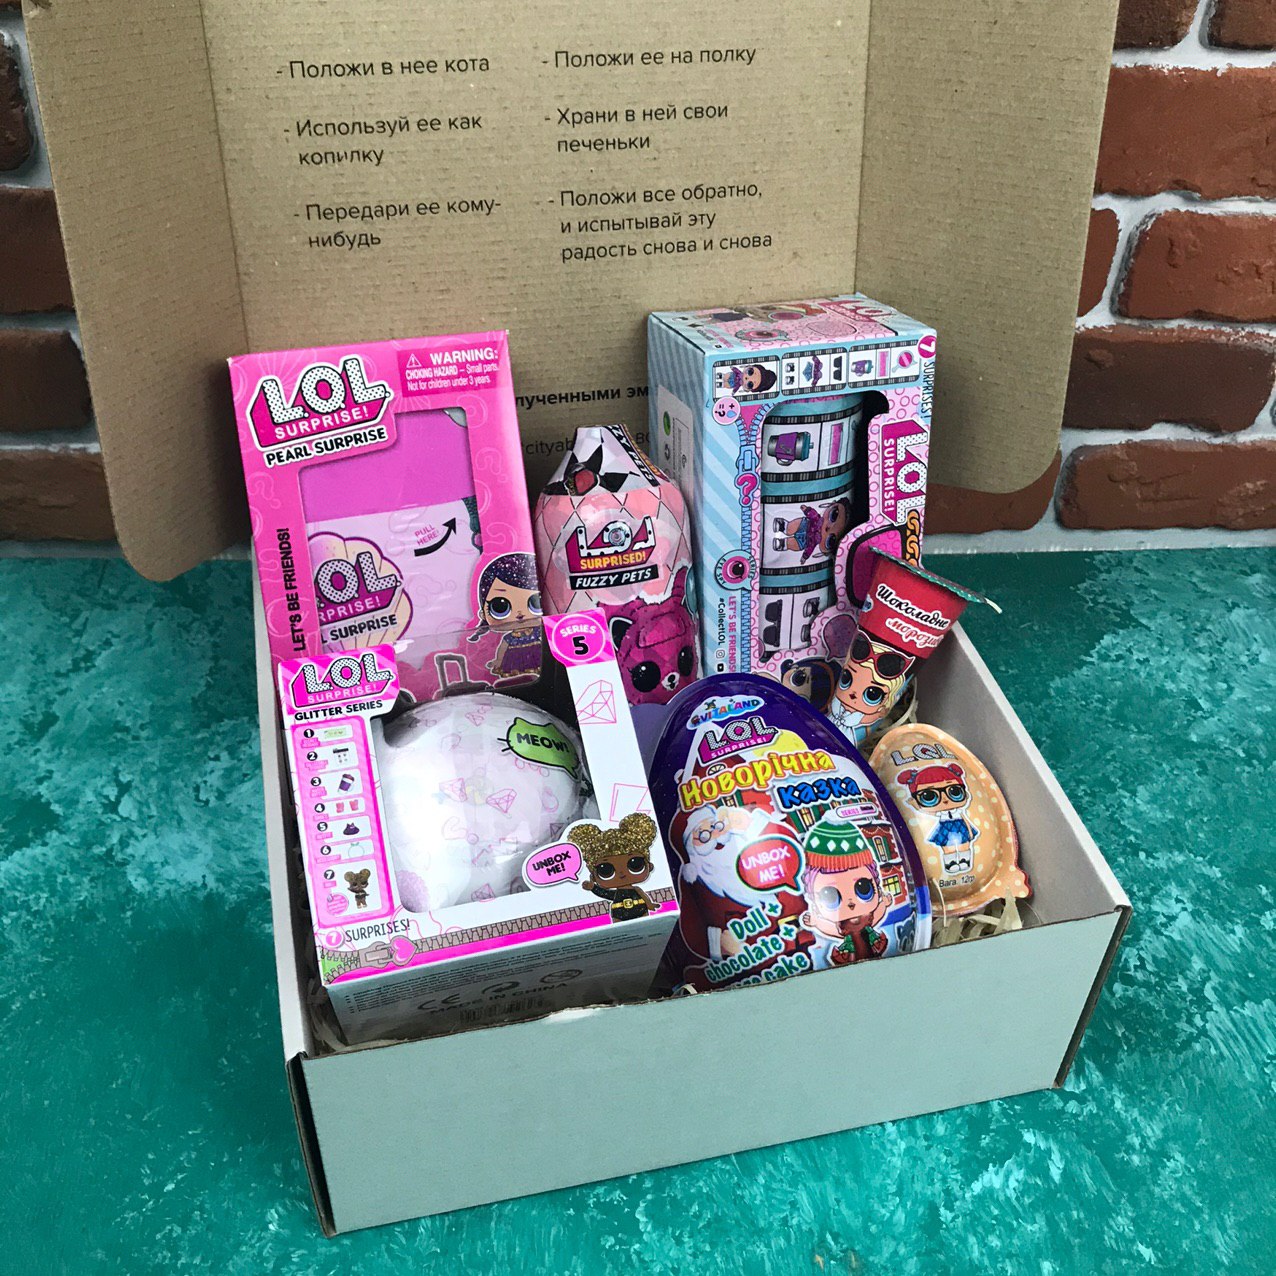 

Подарочный набор детский для девочки "LOL Box" CITY №2550 набор подарочный для женщин из 7 ед. в подарочном боксе